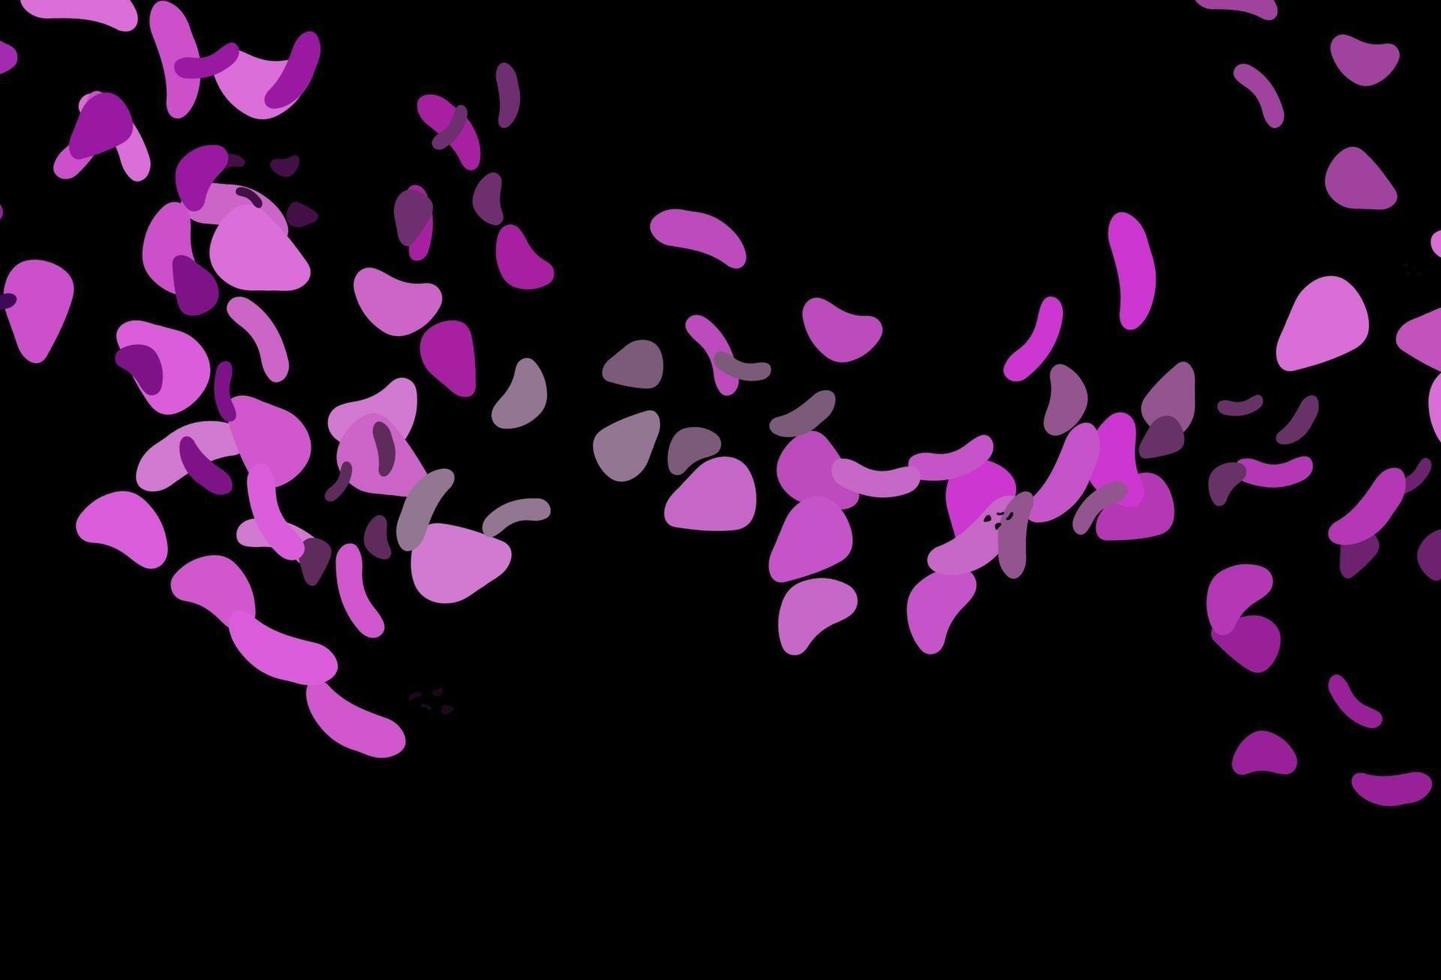 fond de vecteur violet foncé avec des formes abstraites.